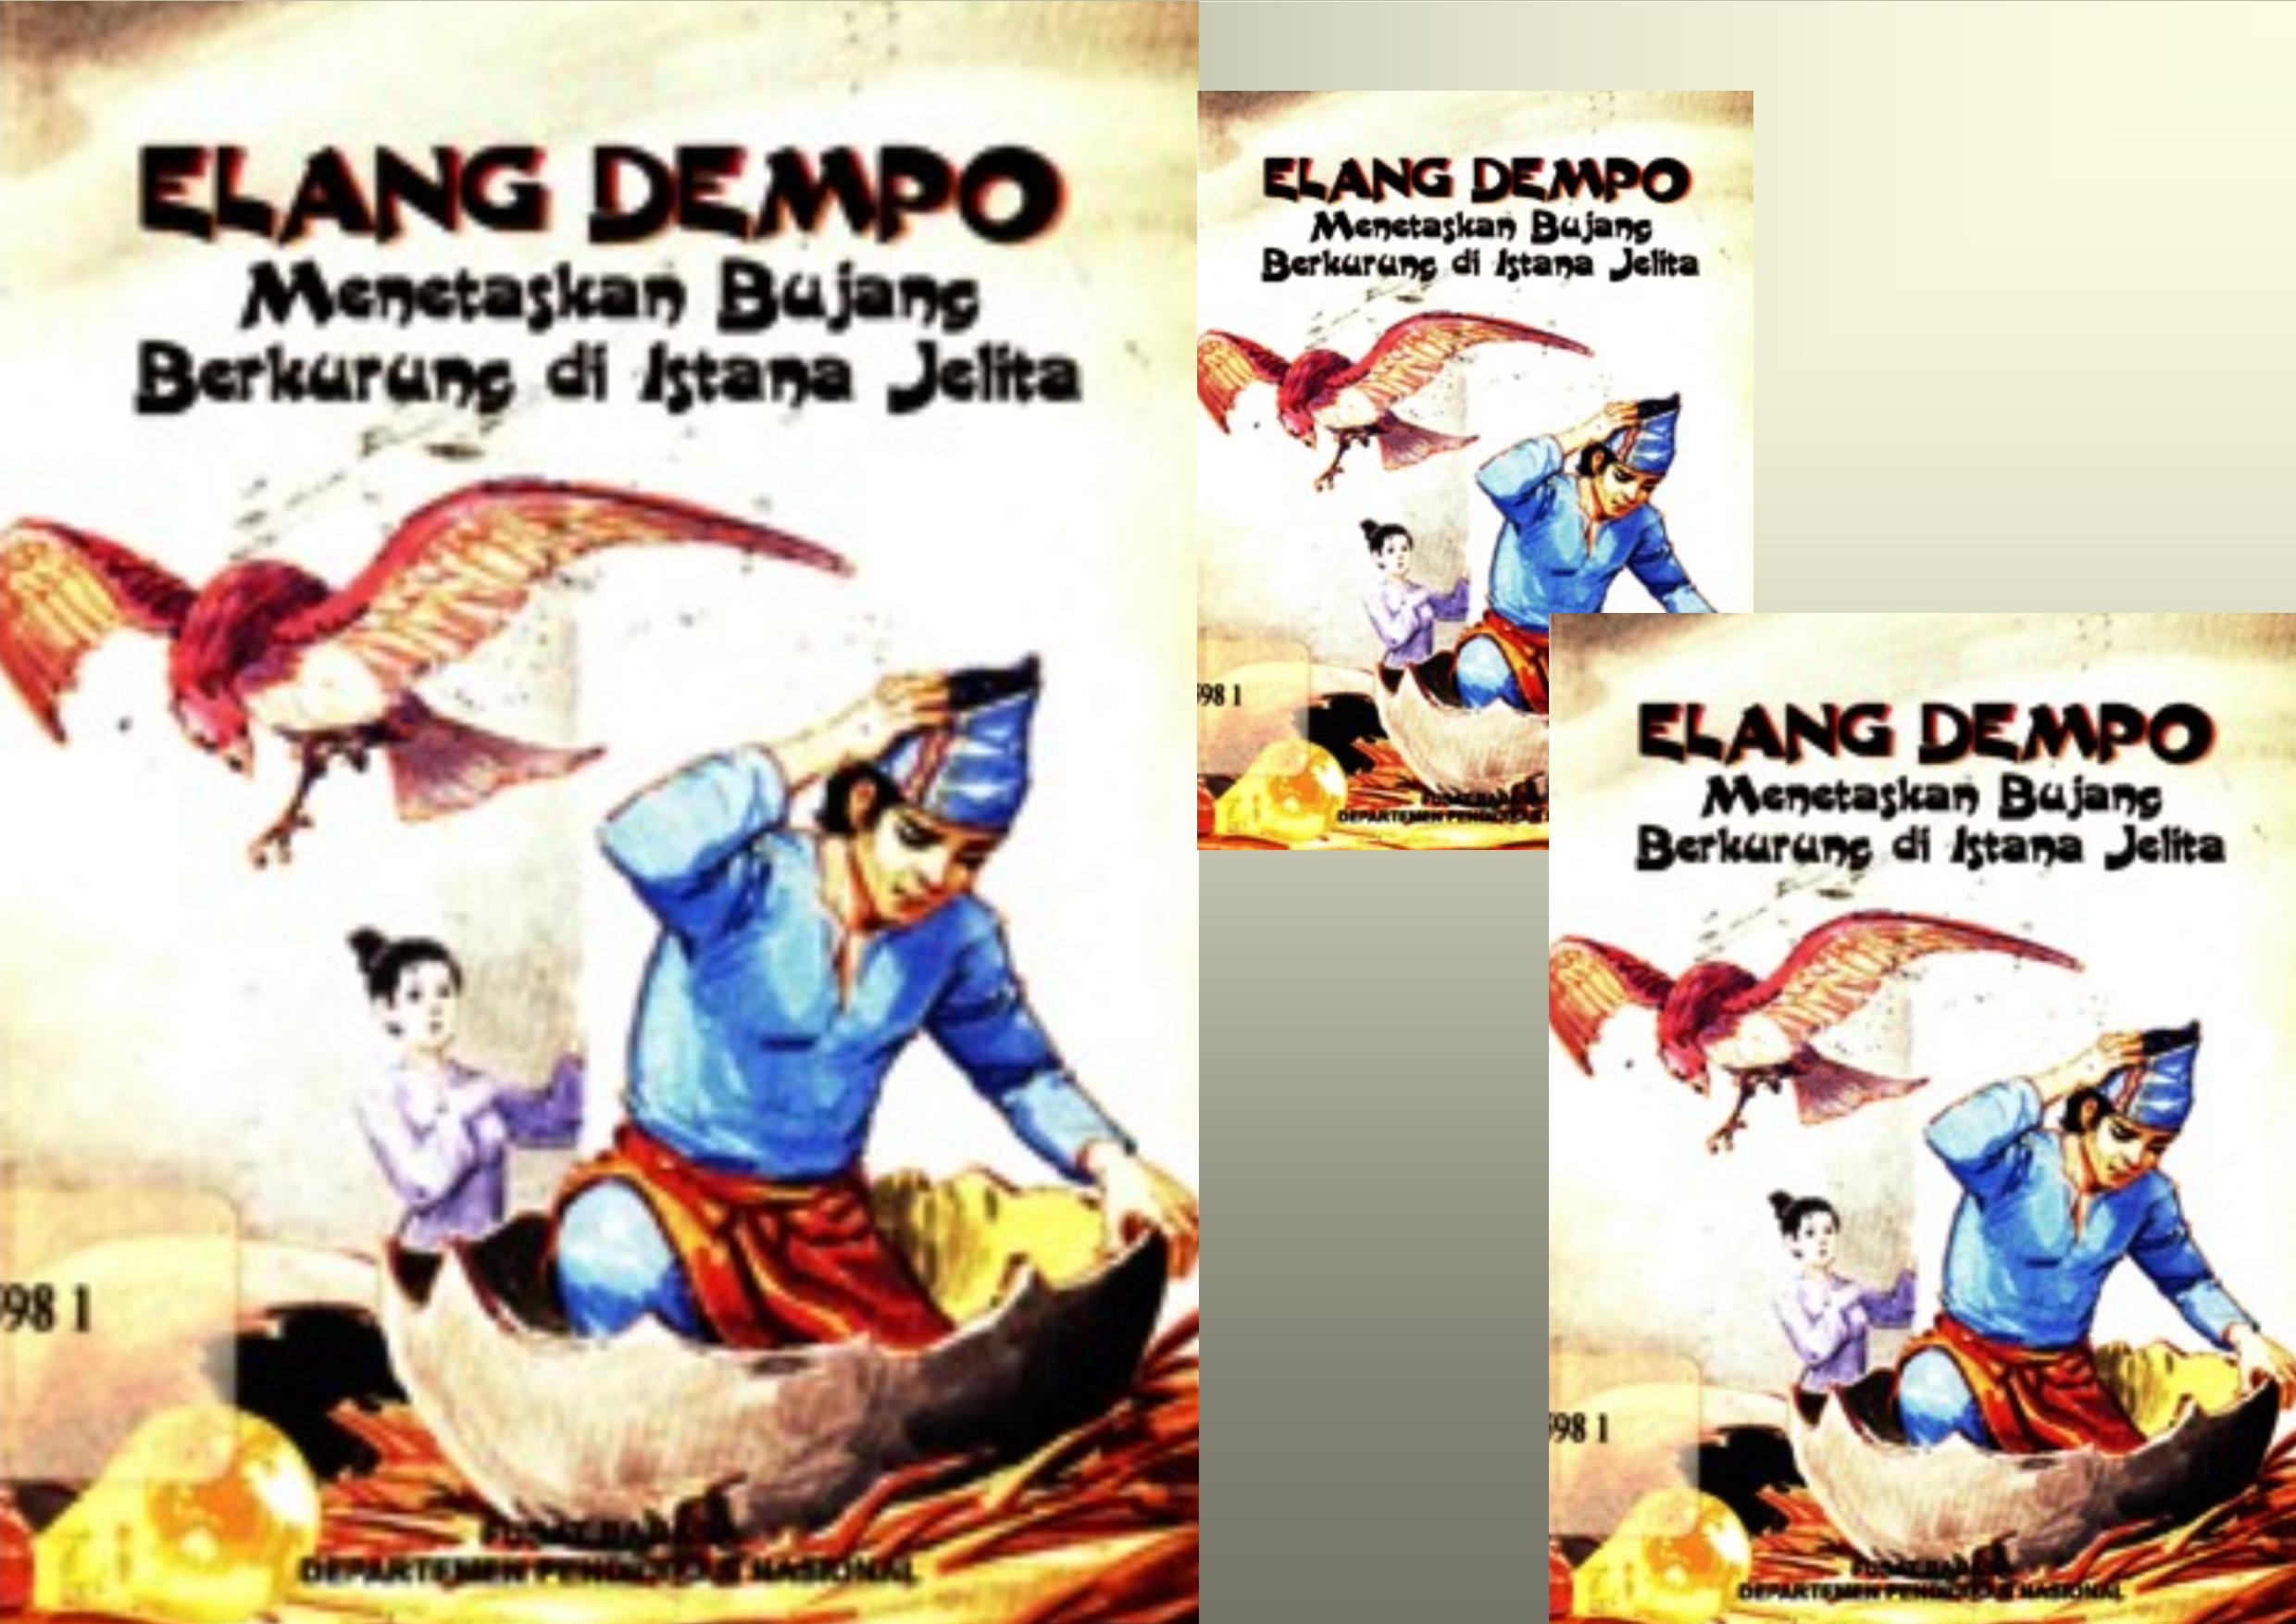 Elang Dempo Menetaskan Bujang Berkurung di Istana Jelita (Bagian 1)